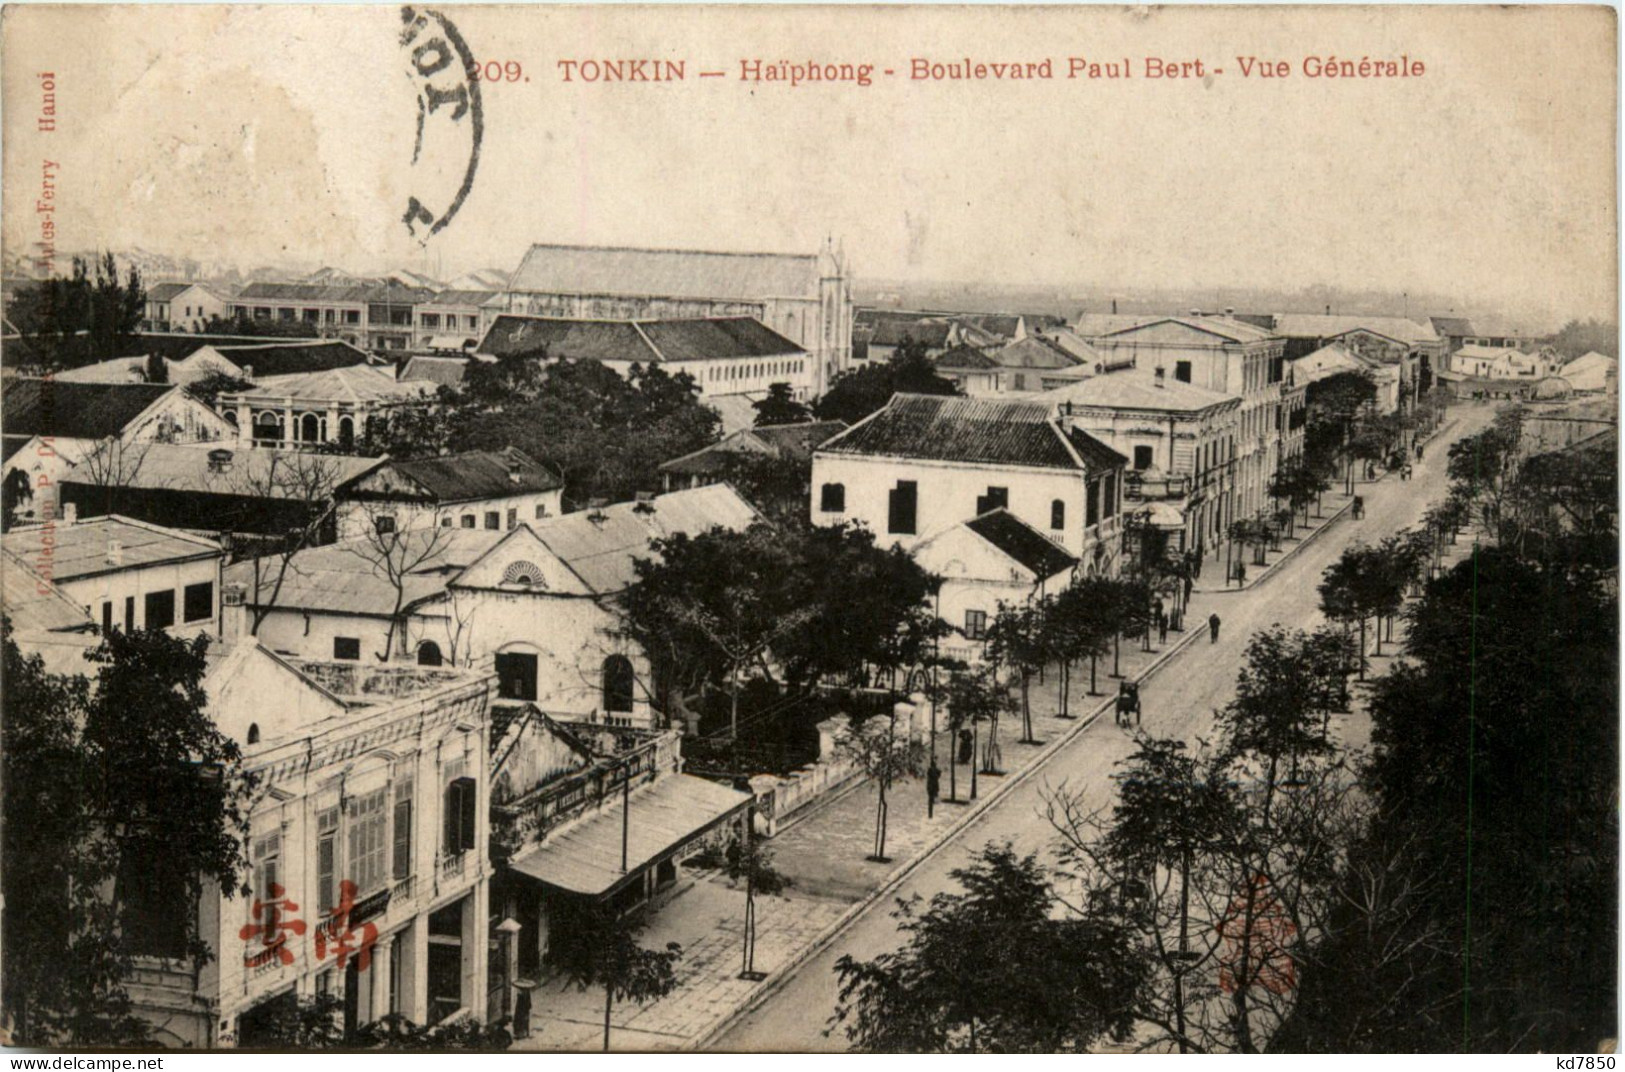 Tonkin - Haiphong - Boulevard Paul Bert - Vietnam